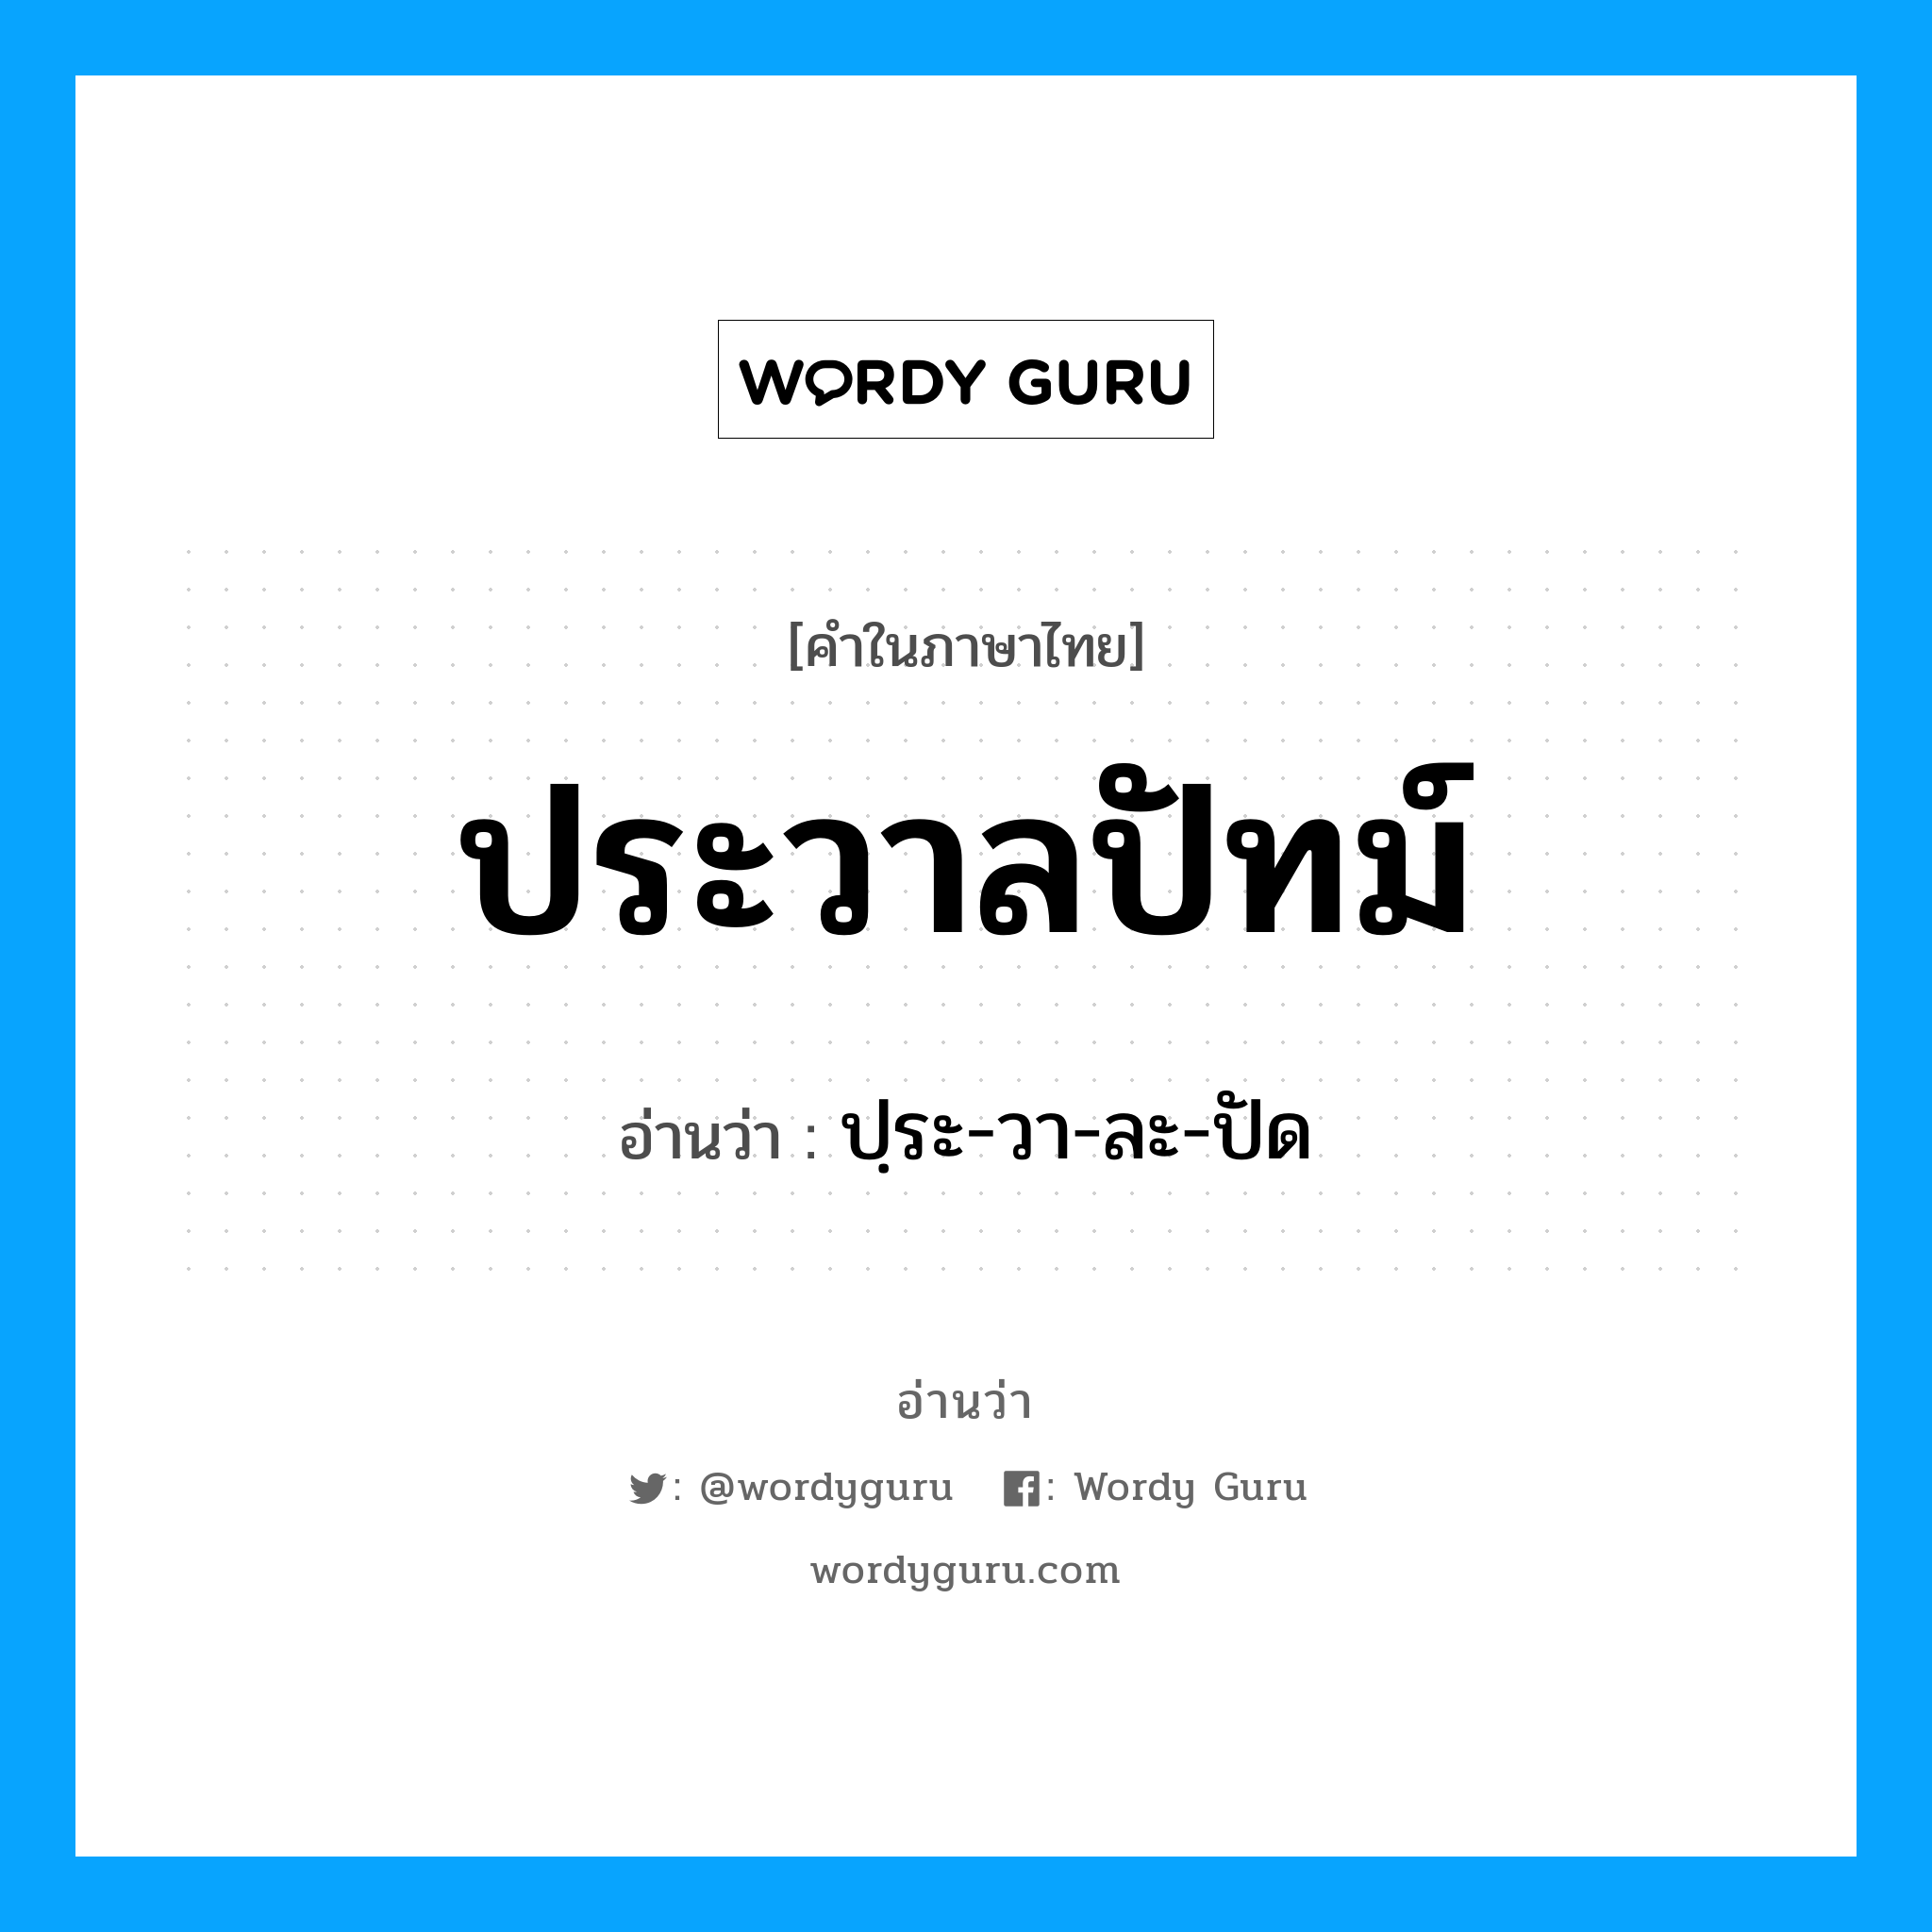 ปฺระ-วา-ละ-ปัด เป็นคำอ่านของคำไหน?, คำในภาษาไทย ปฺระ-วา-ละ-ปัด อ่านว่า ประวาลปัทม์